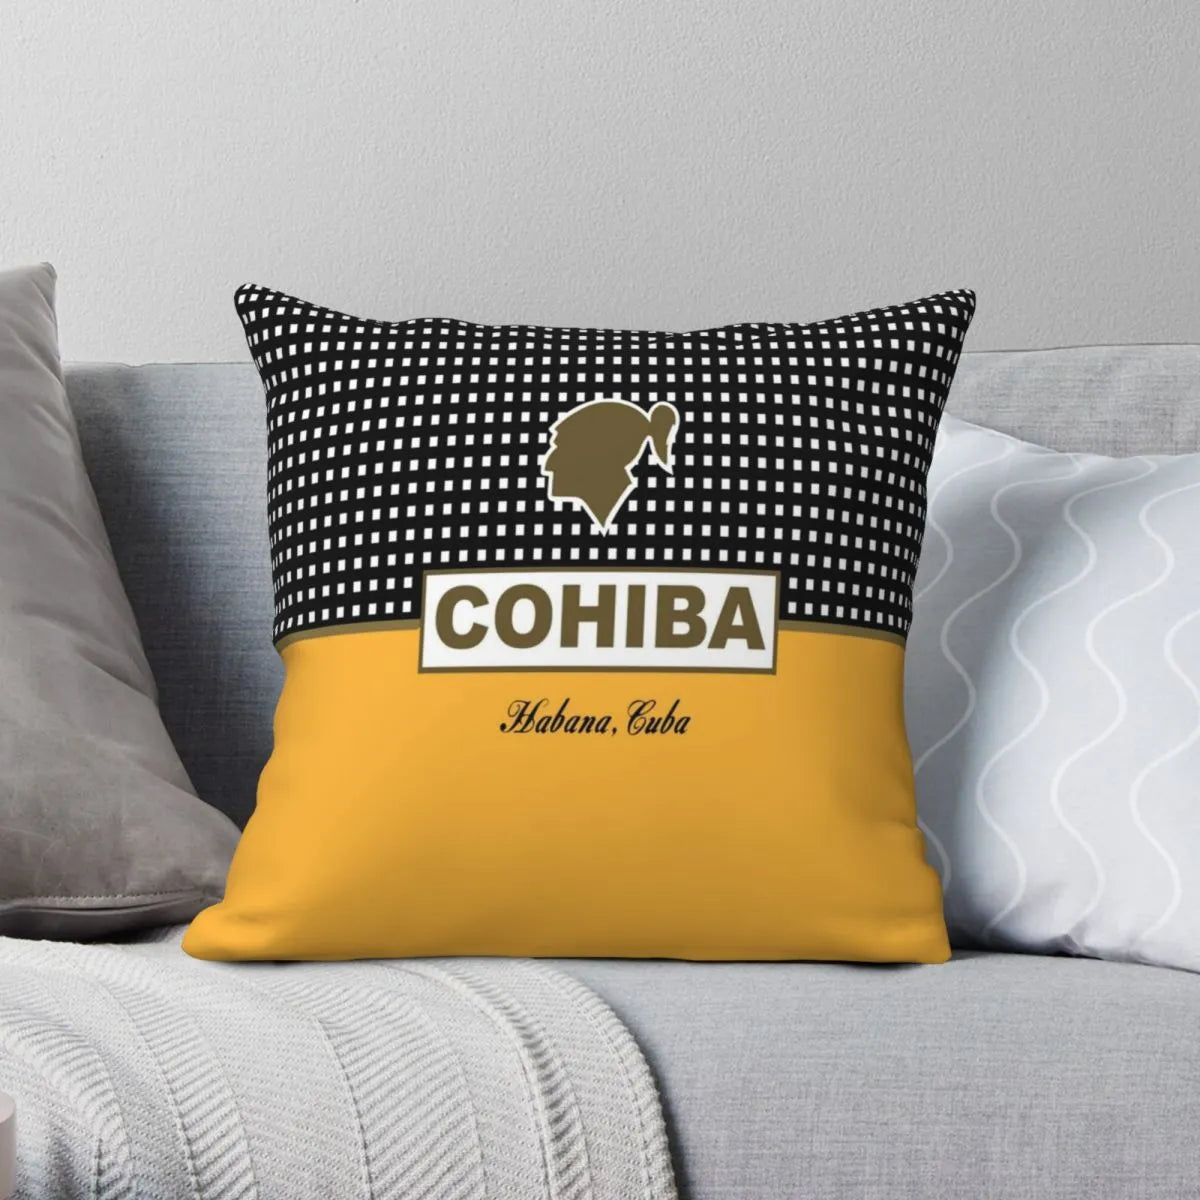 ALDO Linens & Bedding > Bedding > Pillowcases & Shams Cohiba Habana Cuba Cigar Style Pillowcases Yellow Poliester